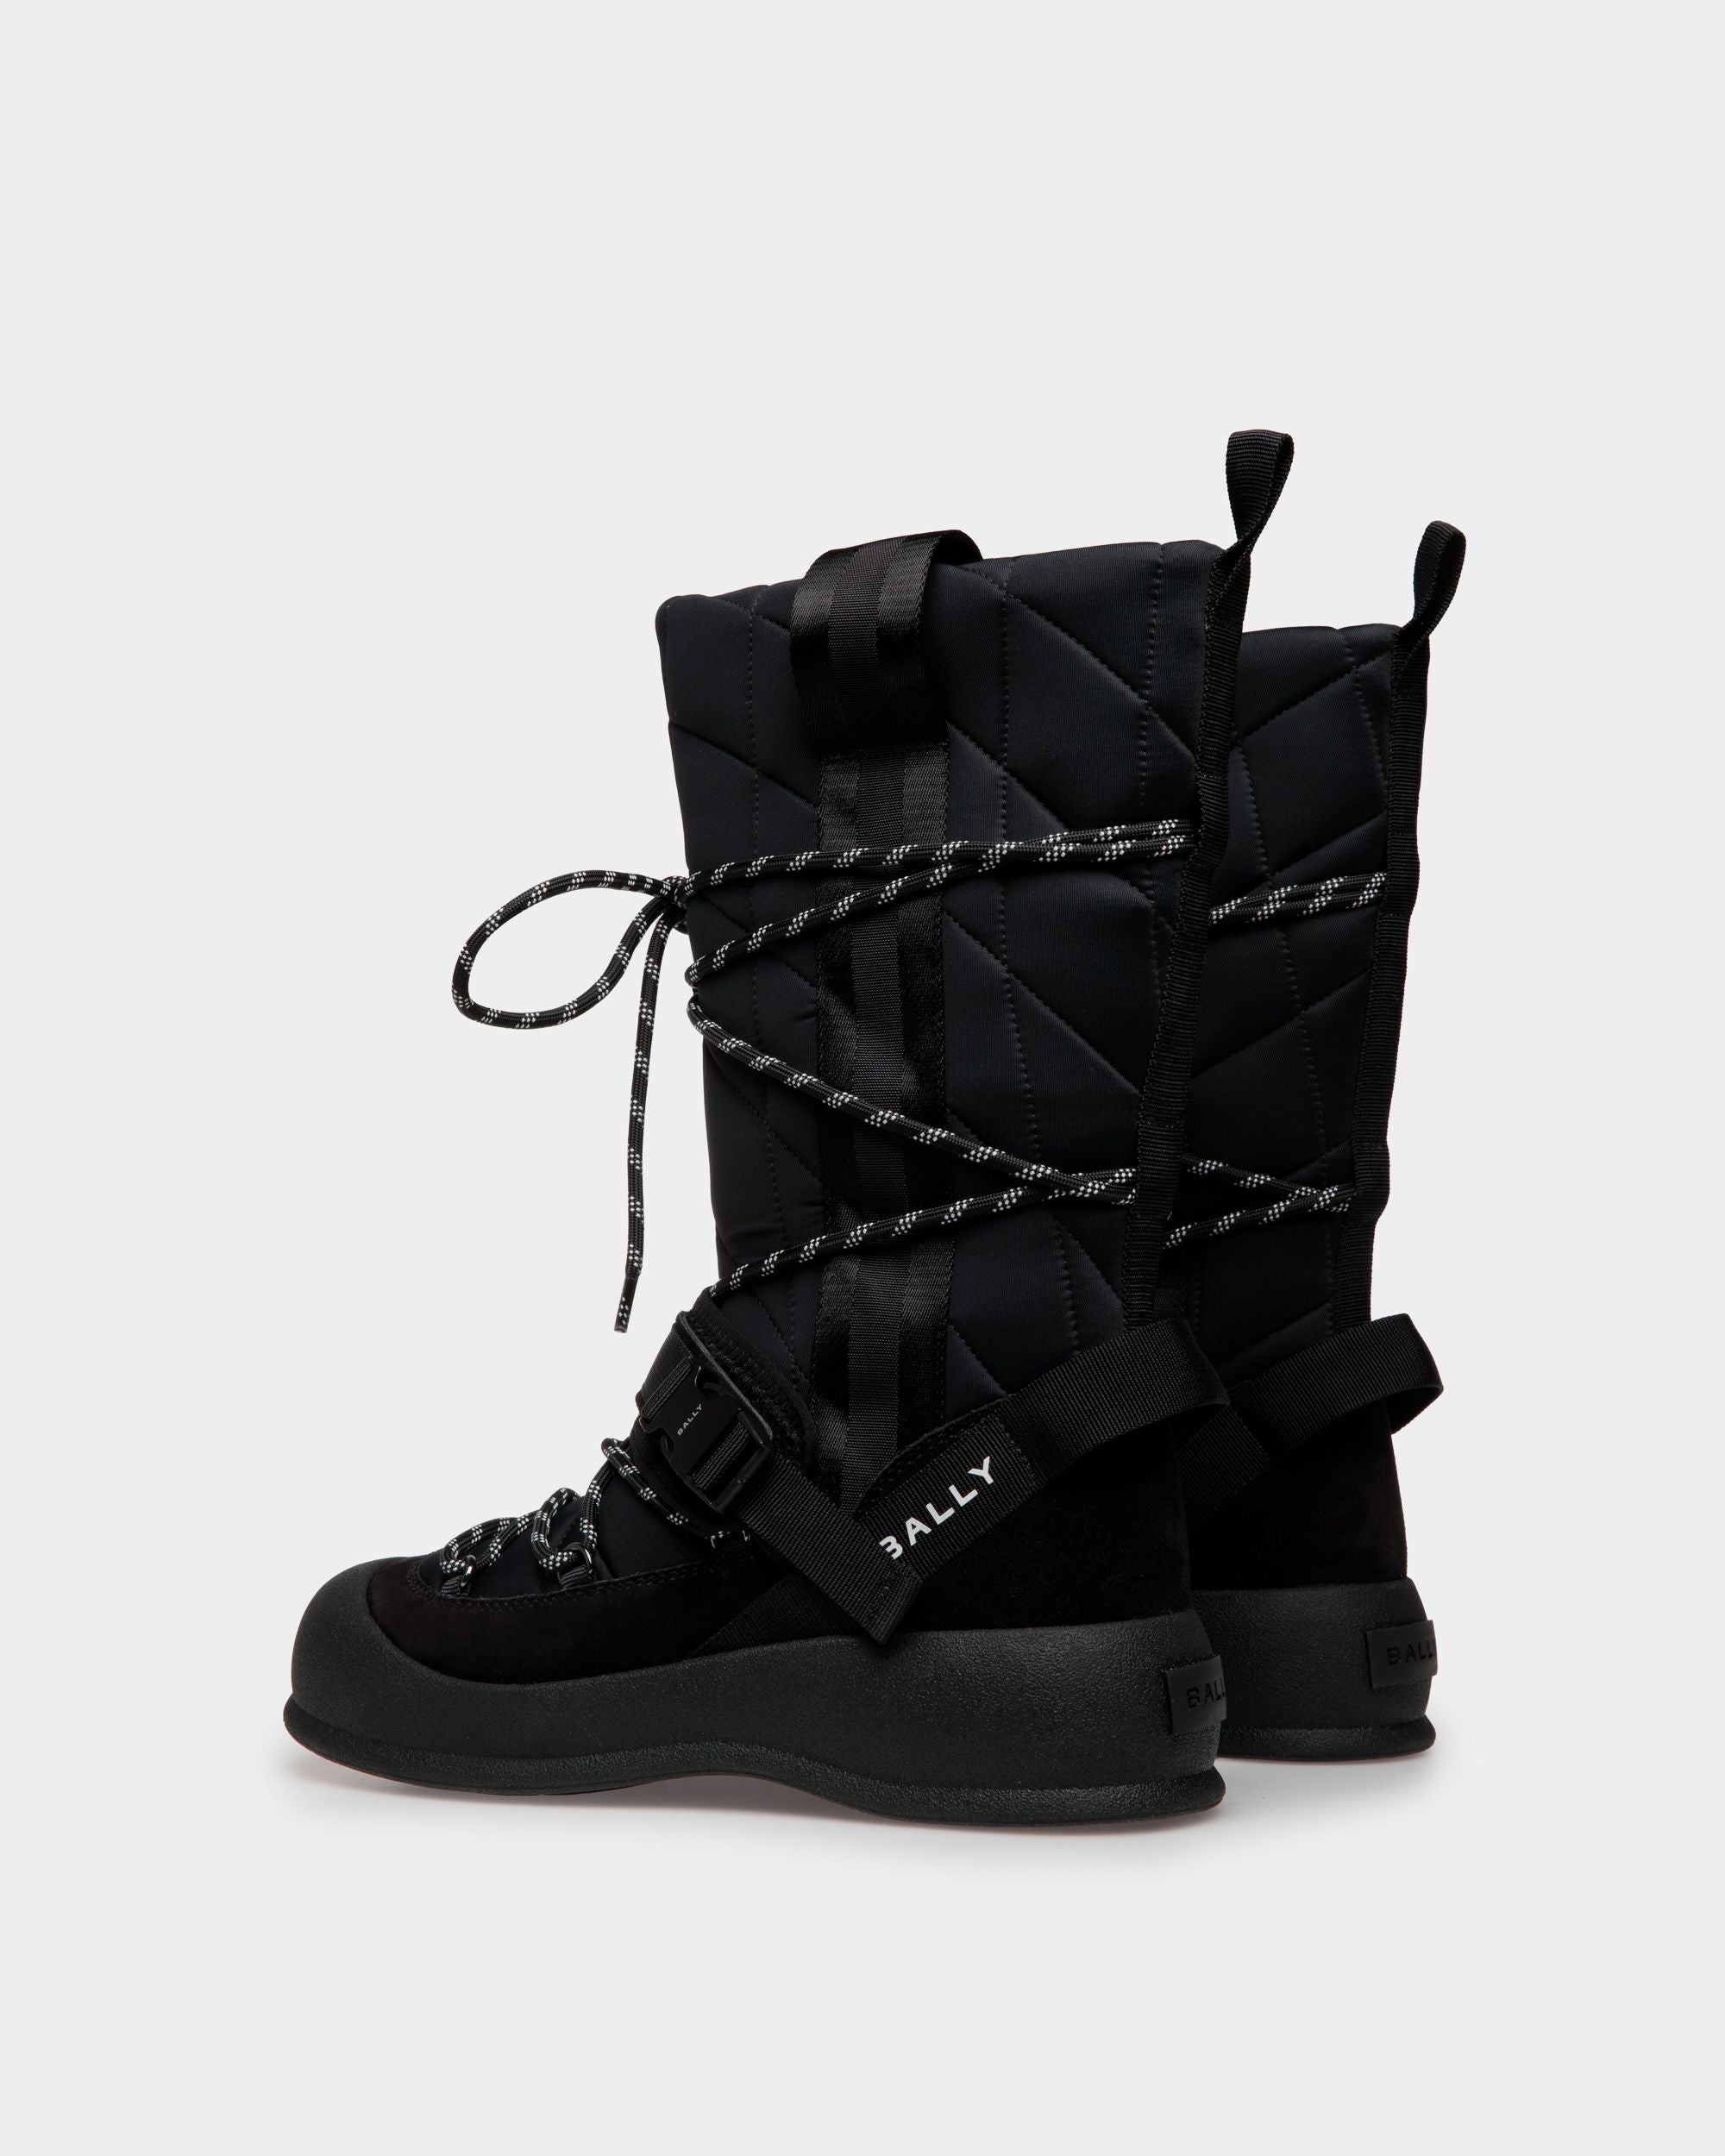 Frei | Women's Boot in Black Nylon | Bally | Still Life 3/4 Back